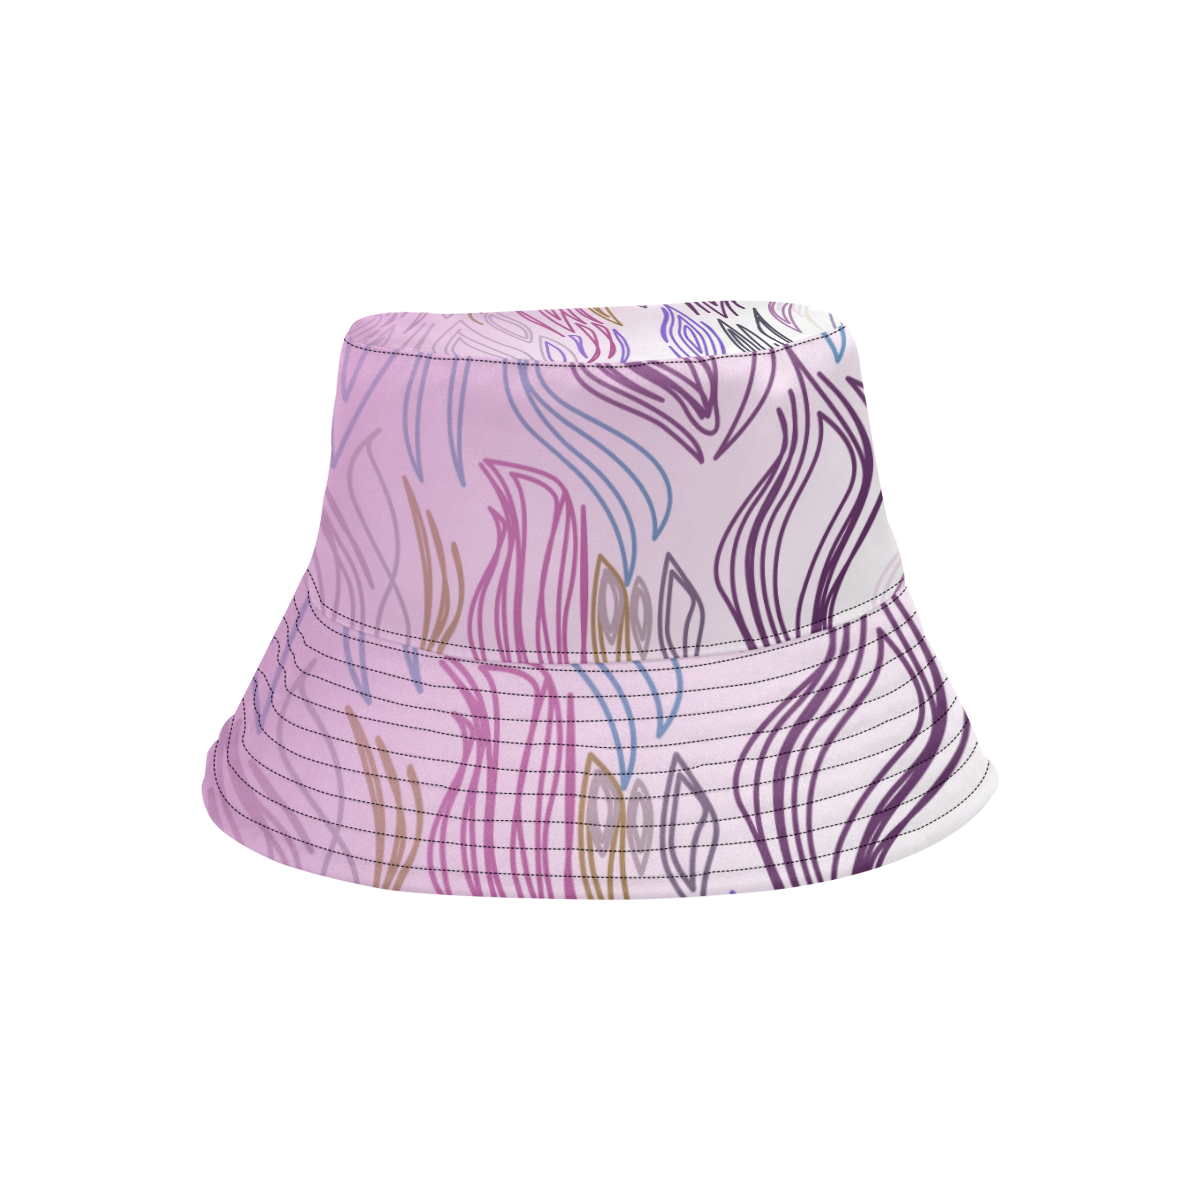 Sweet zigzag pinks lines Hat design All Over Print Bucket Hat